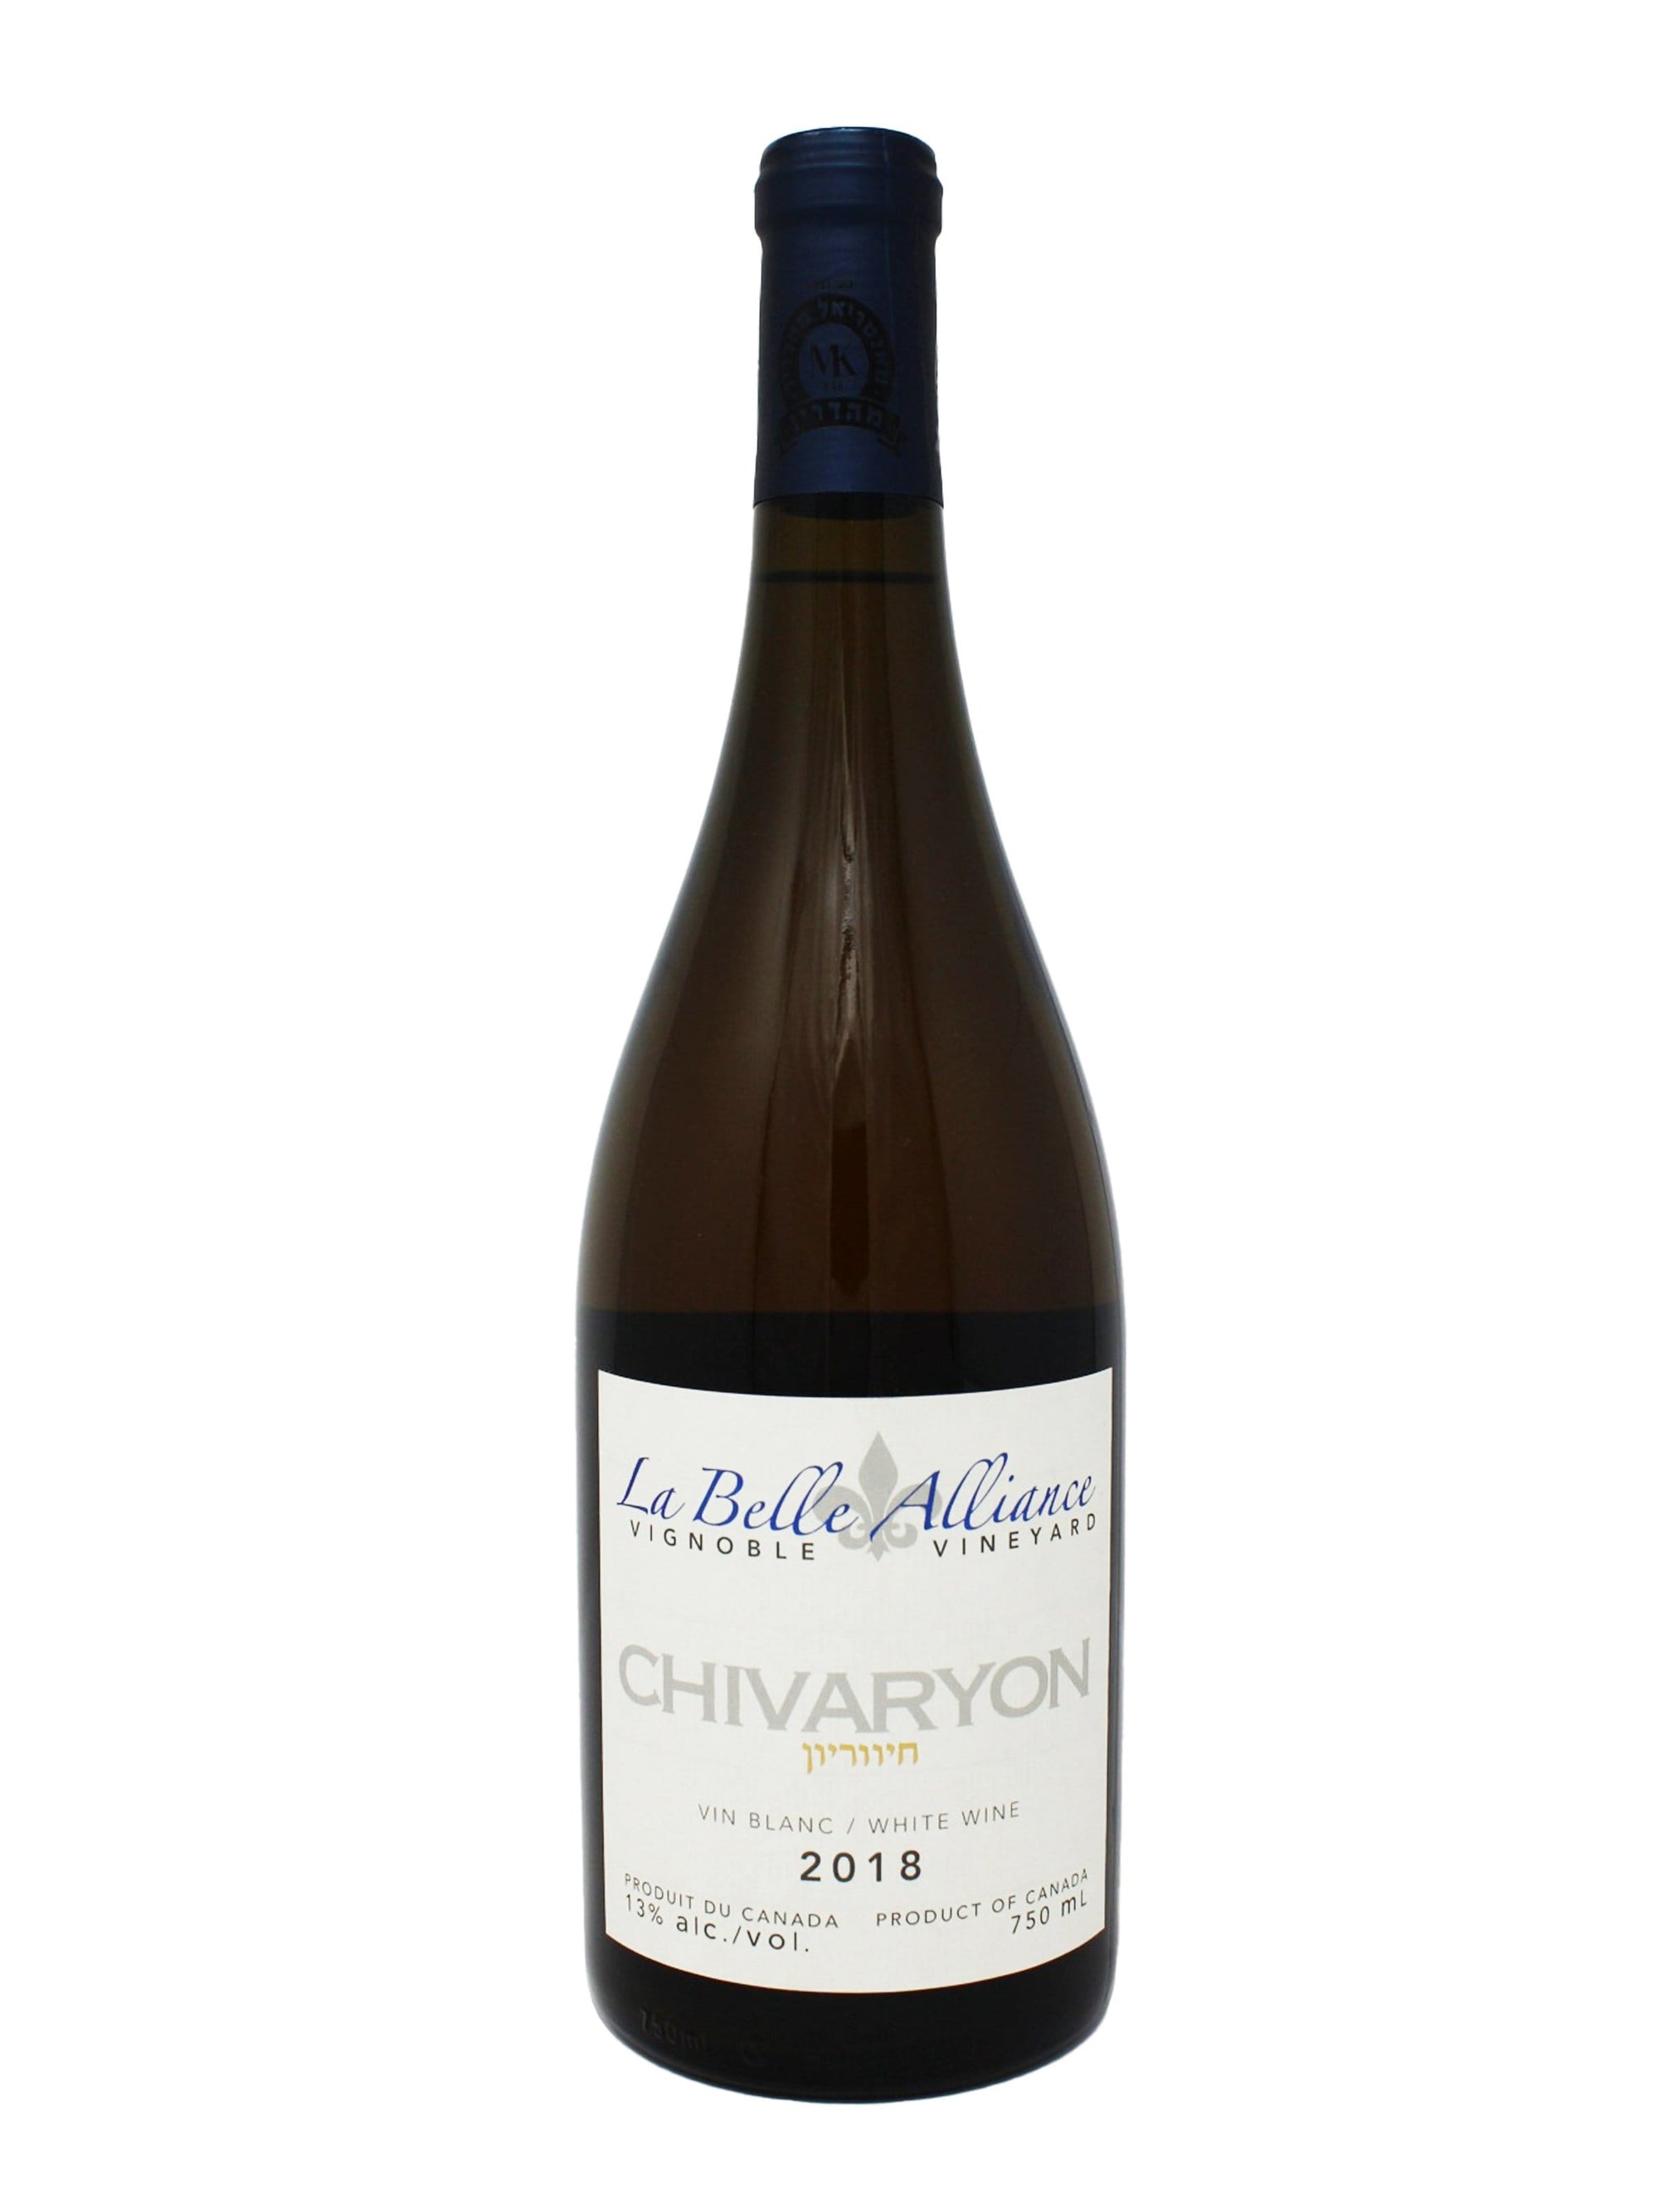 La Belle Alliance Chivaryon 2018 - Vin blanc kasher du Vignoble La Belle Alliance